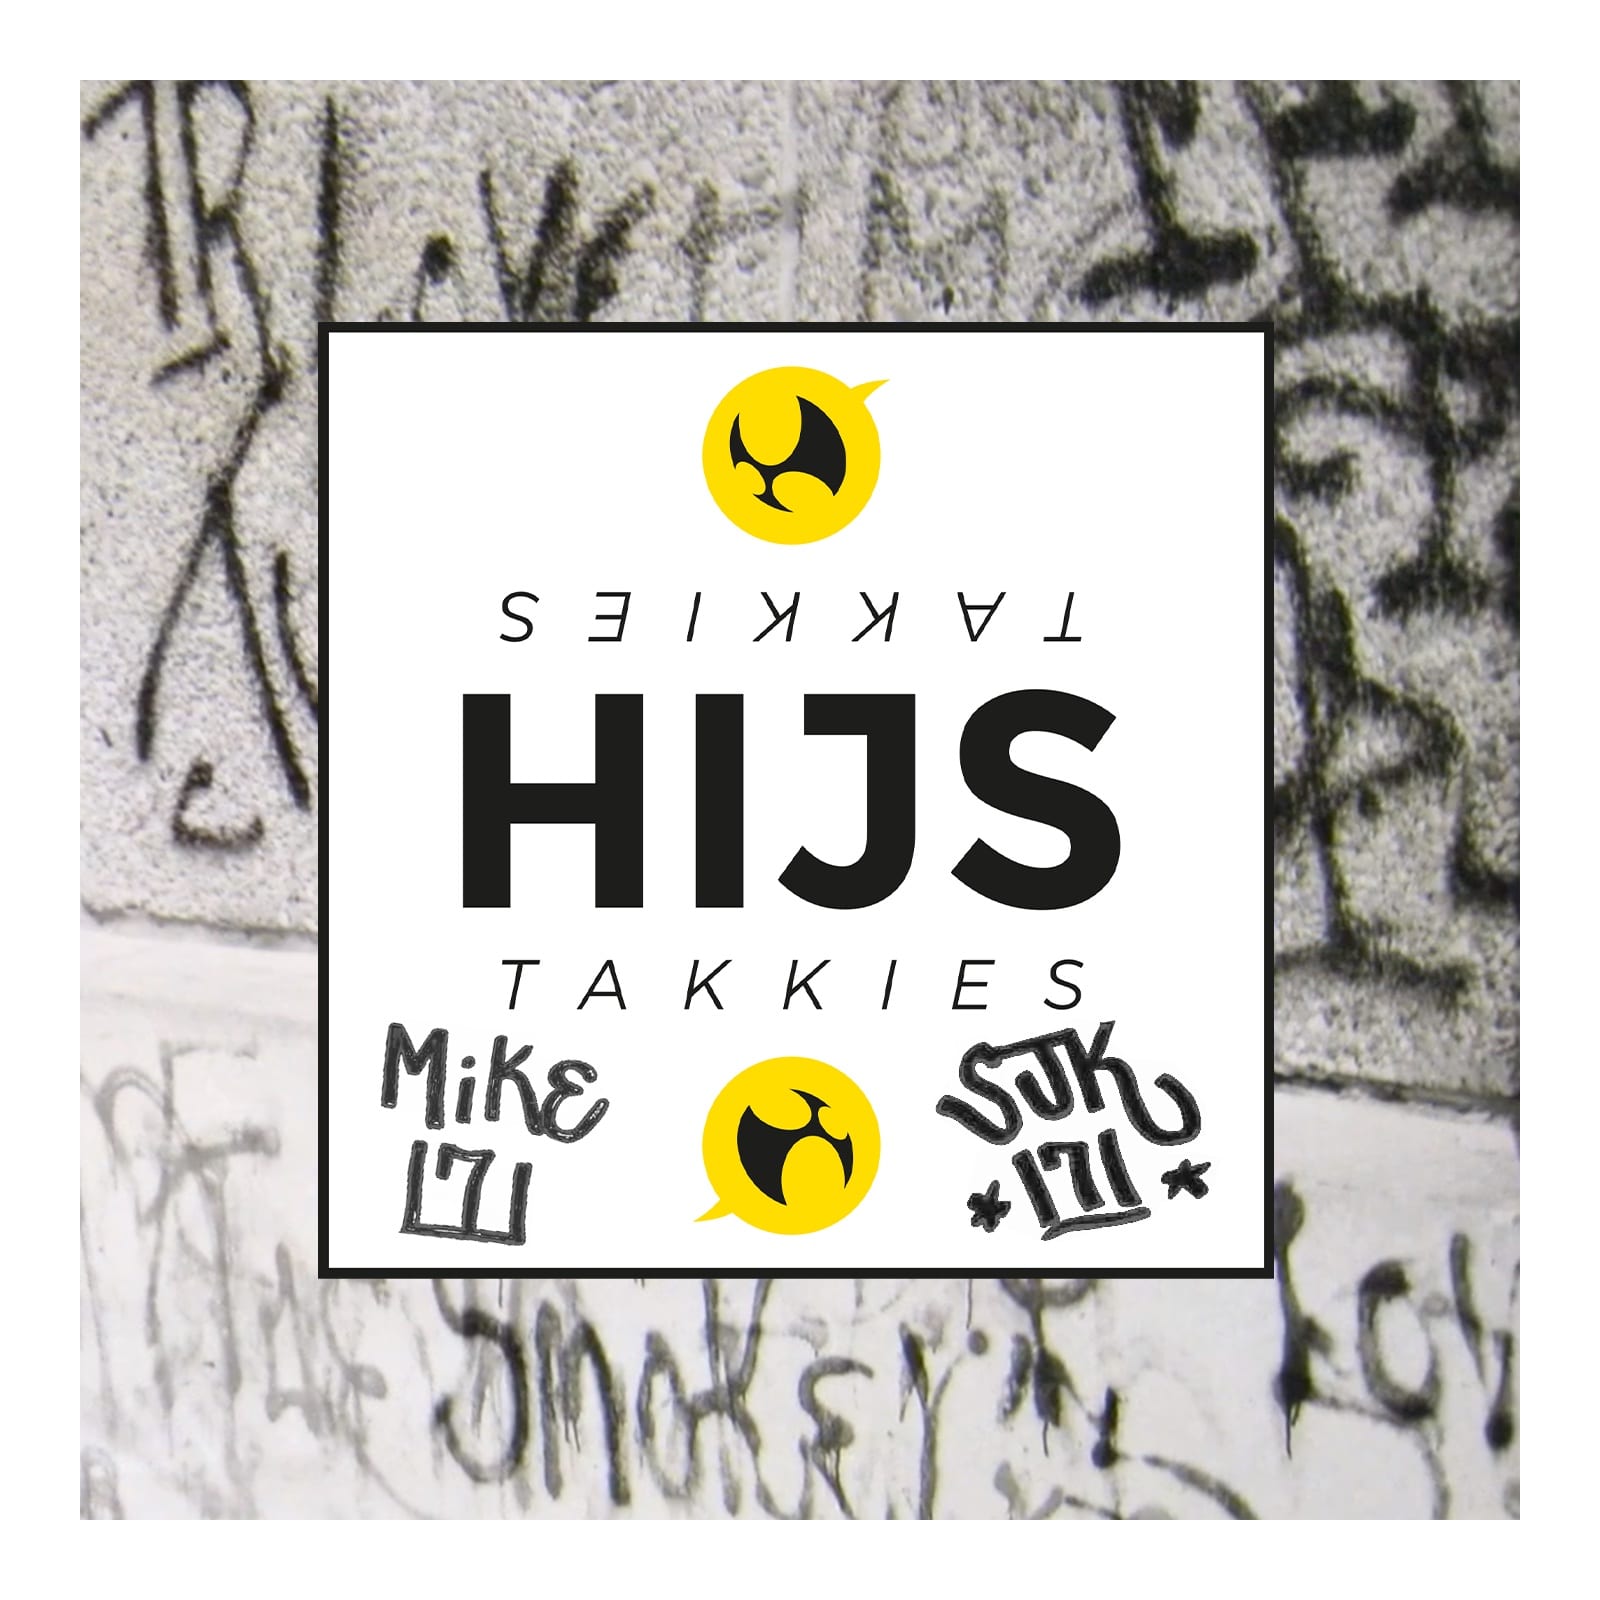 Mike 171 en SJK 171 tags op de HIJStakkies cover